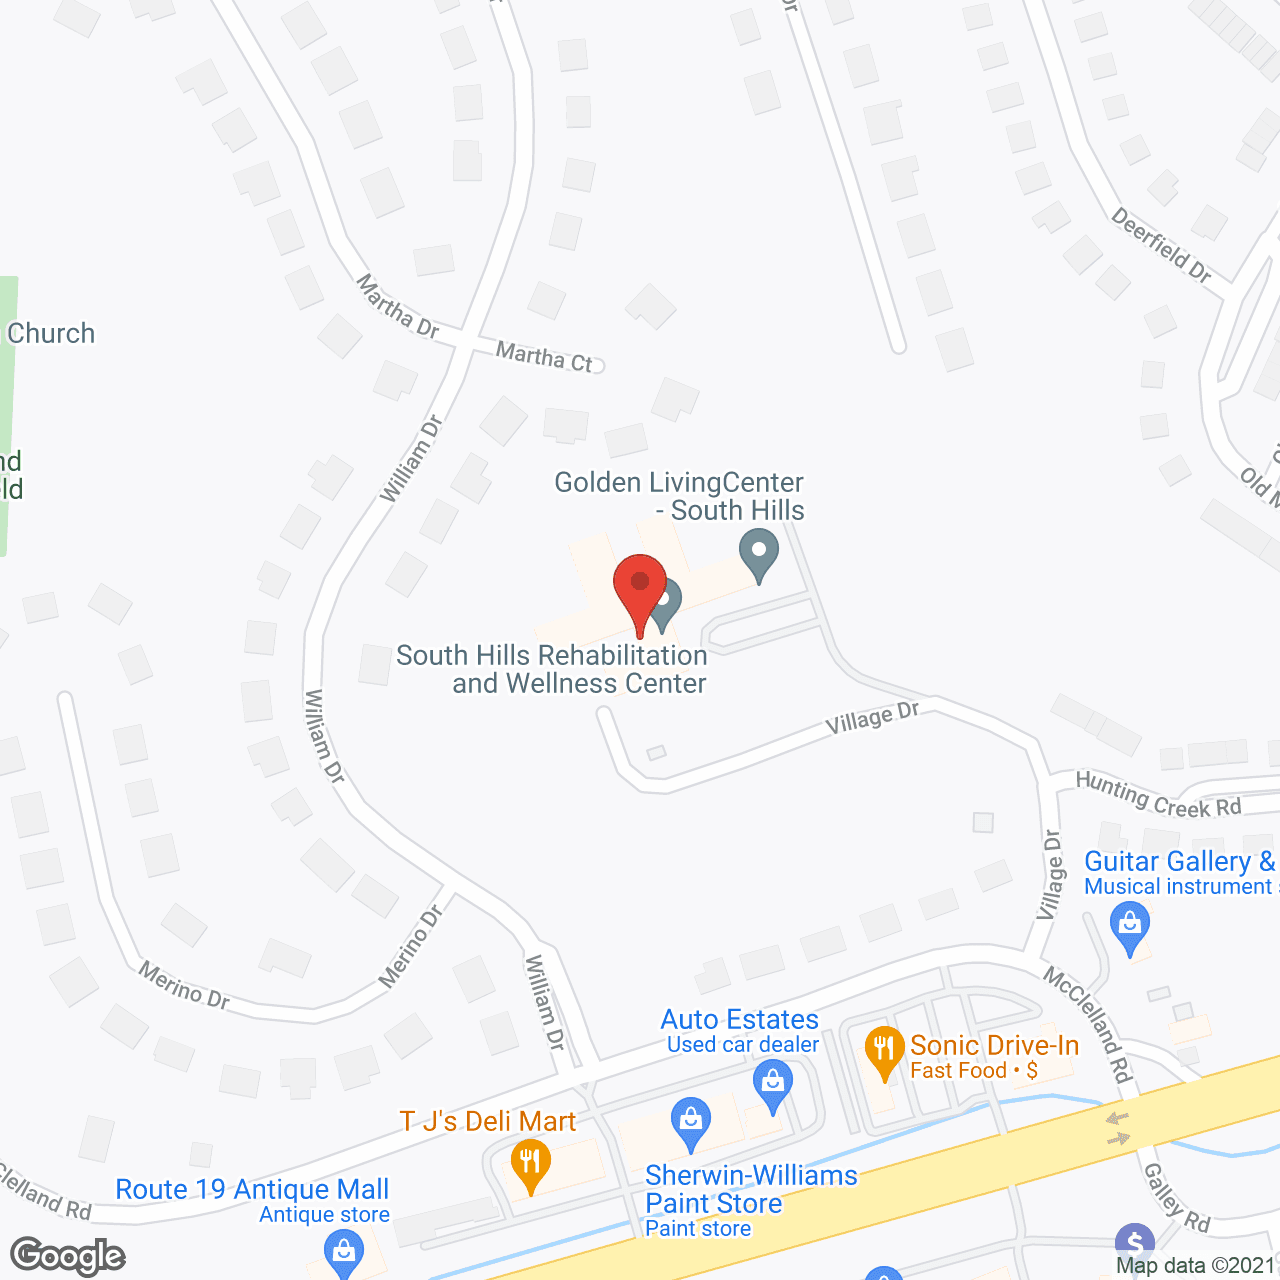 Golden LivingCenter - South Hills in google map